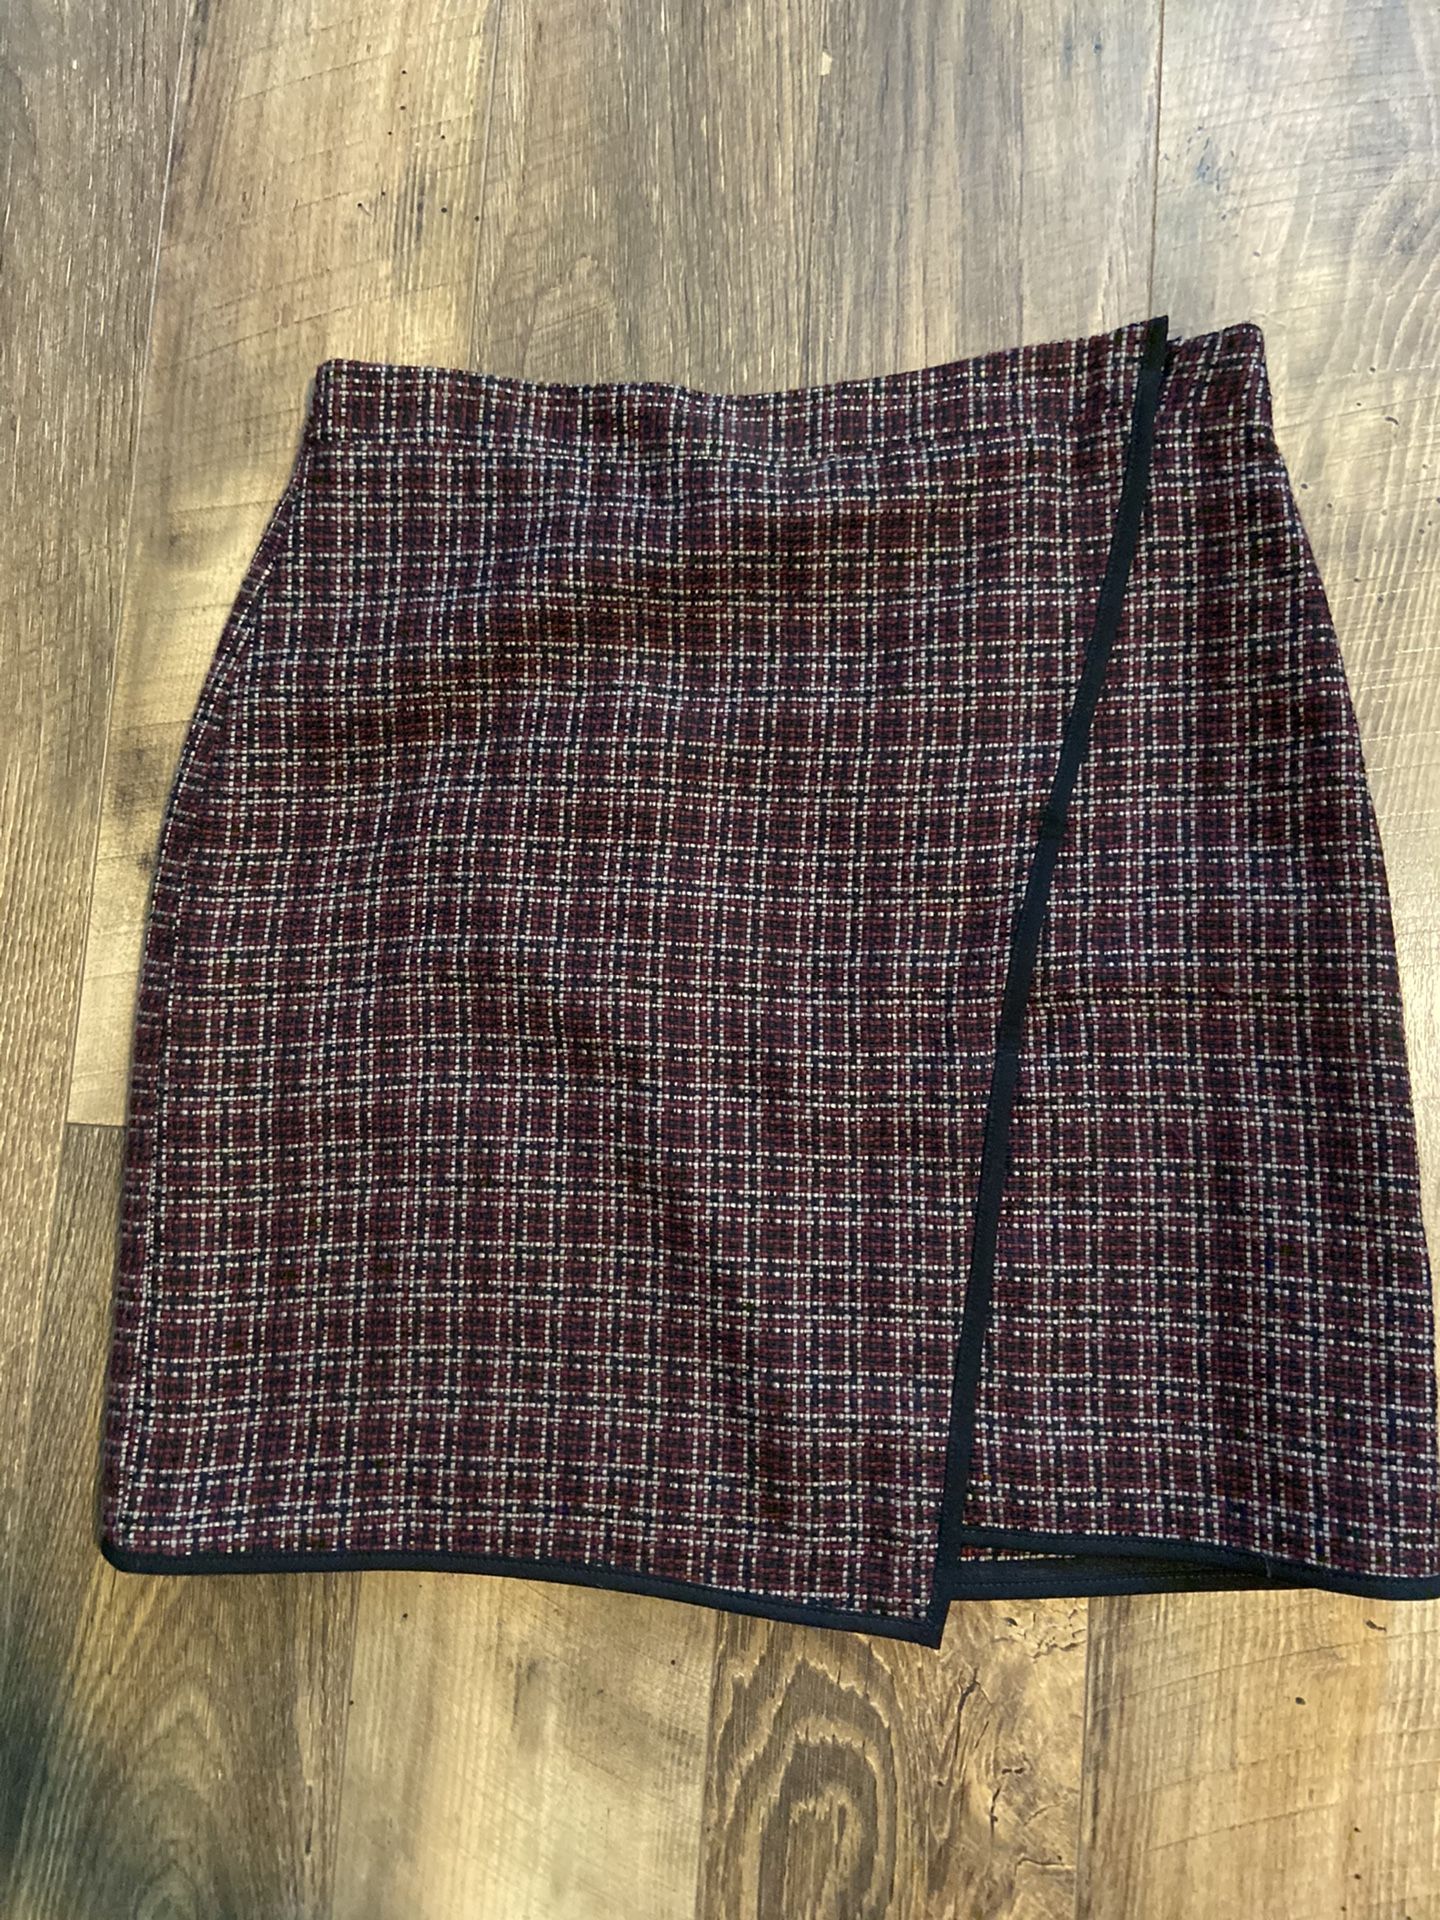 Plaid Loft Pencil Skirt Size 2